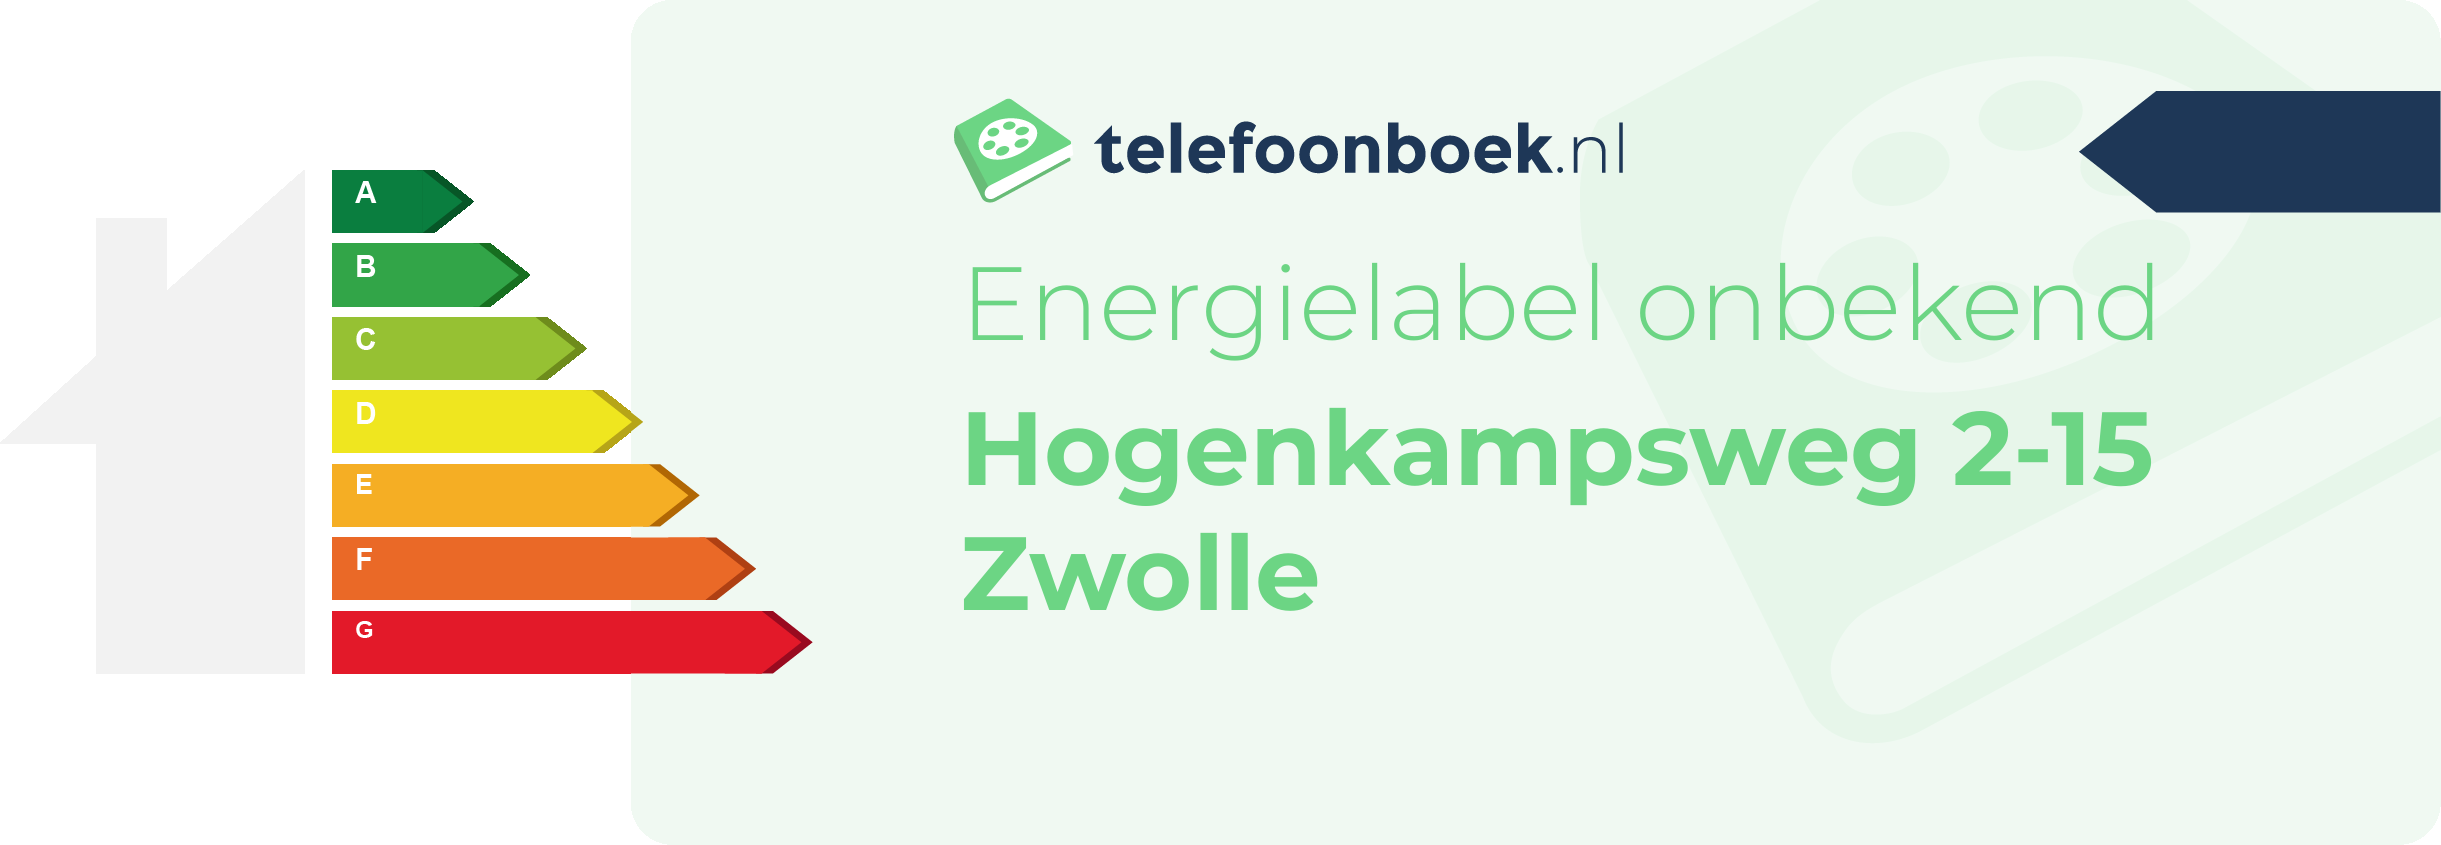 Energielabel Hogenkampsweg 2-15 Zwolle